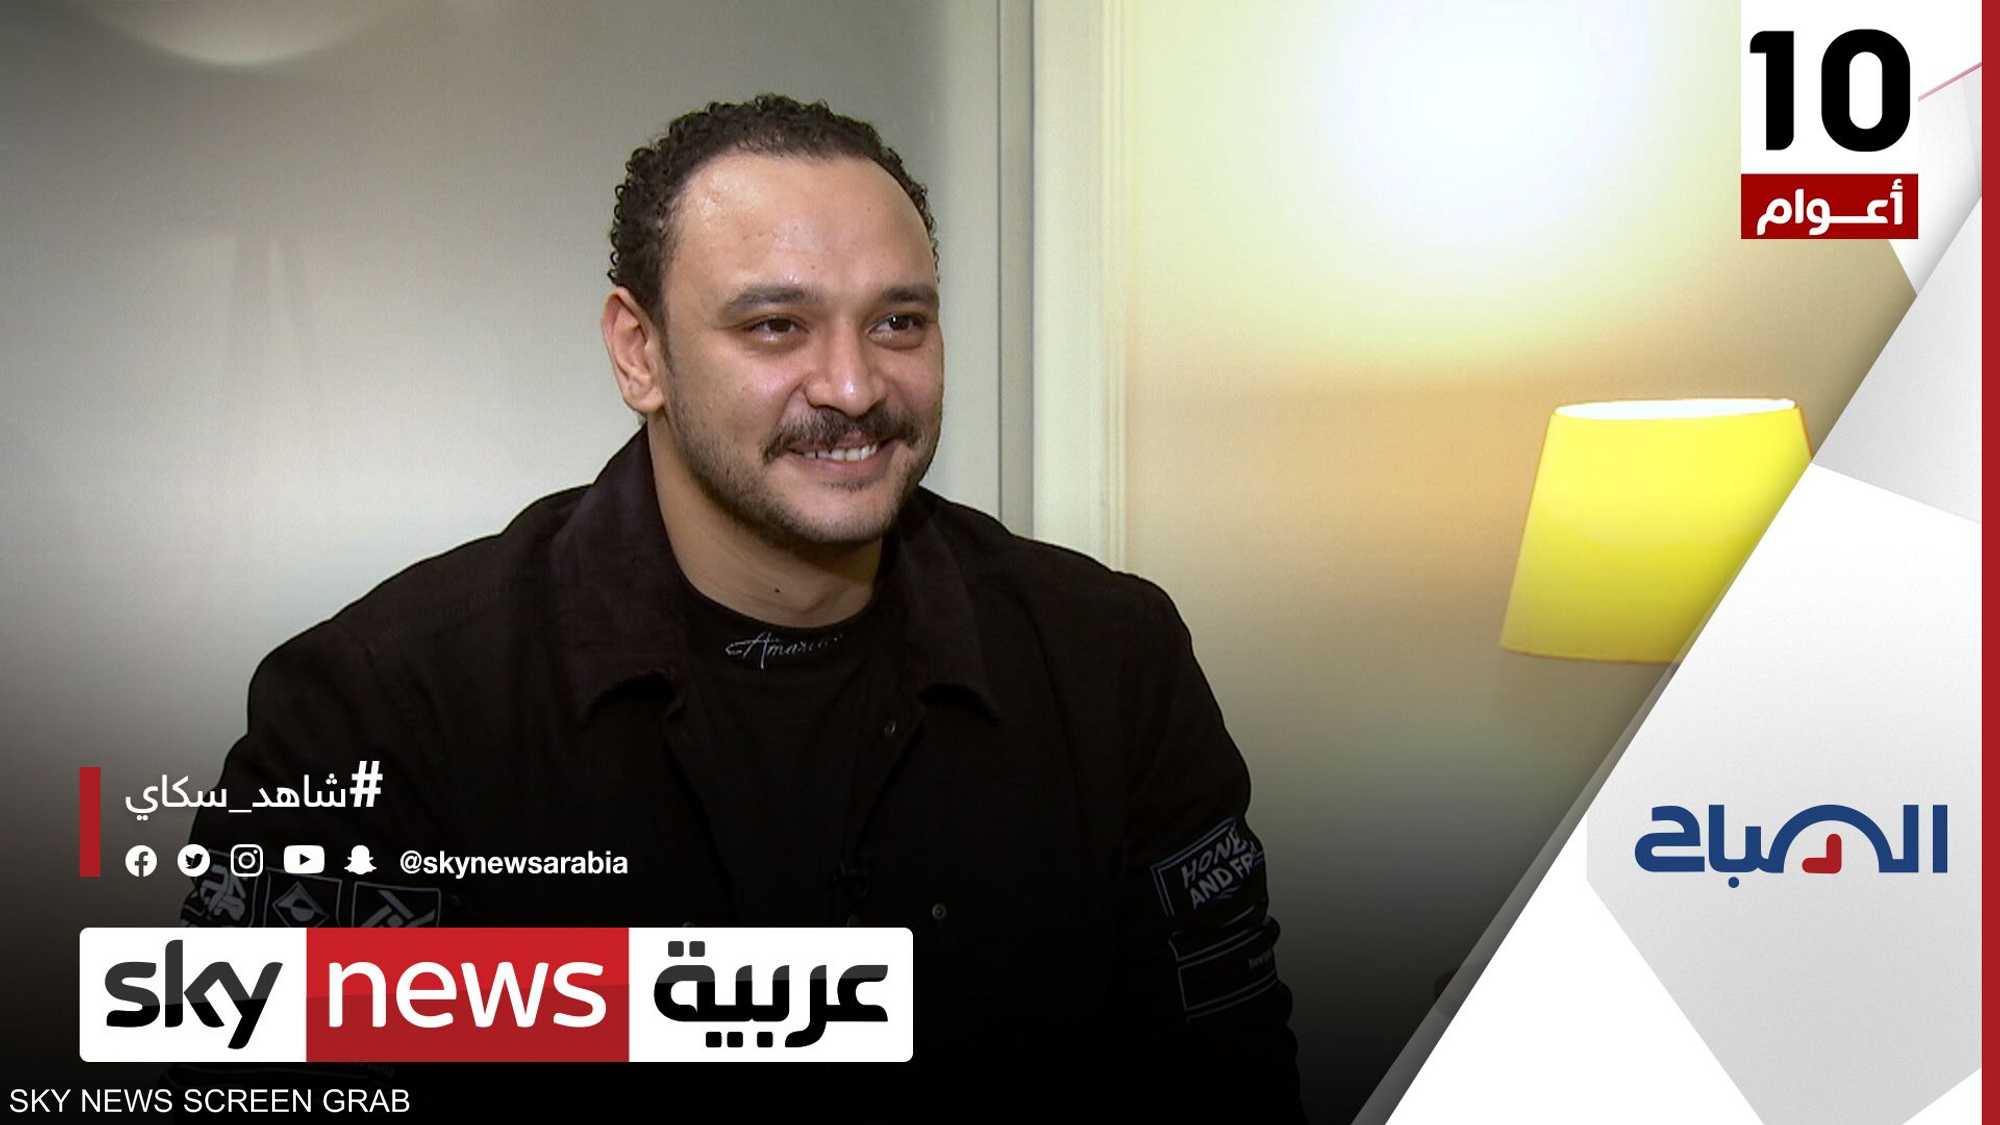 كيف يرى أحمد خالد صالح تجربته في الدراما؟